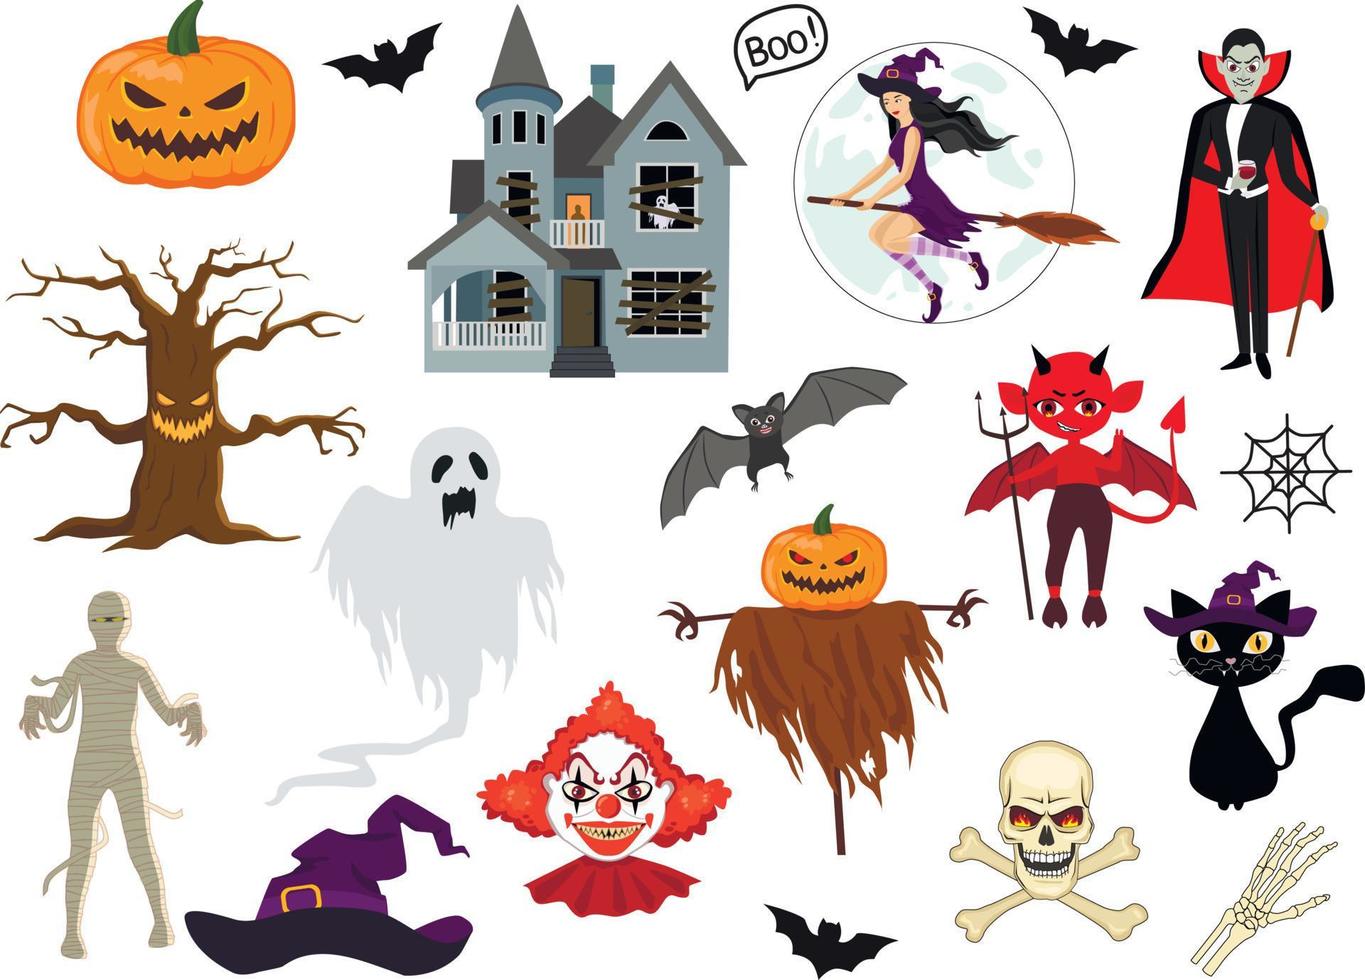 impostato vettore illustrazione di strambo divertimento Halloween trucco o trattare design elementi, come come pipistrelli, zucche, gatti, e di più. Perfetto per inviti, figli di disegno, e confezione.